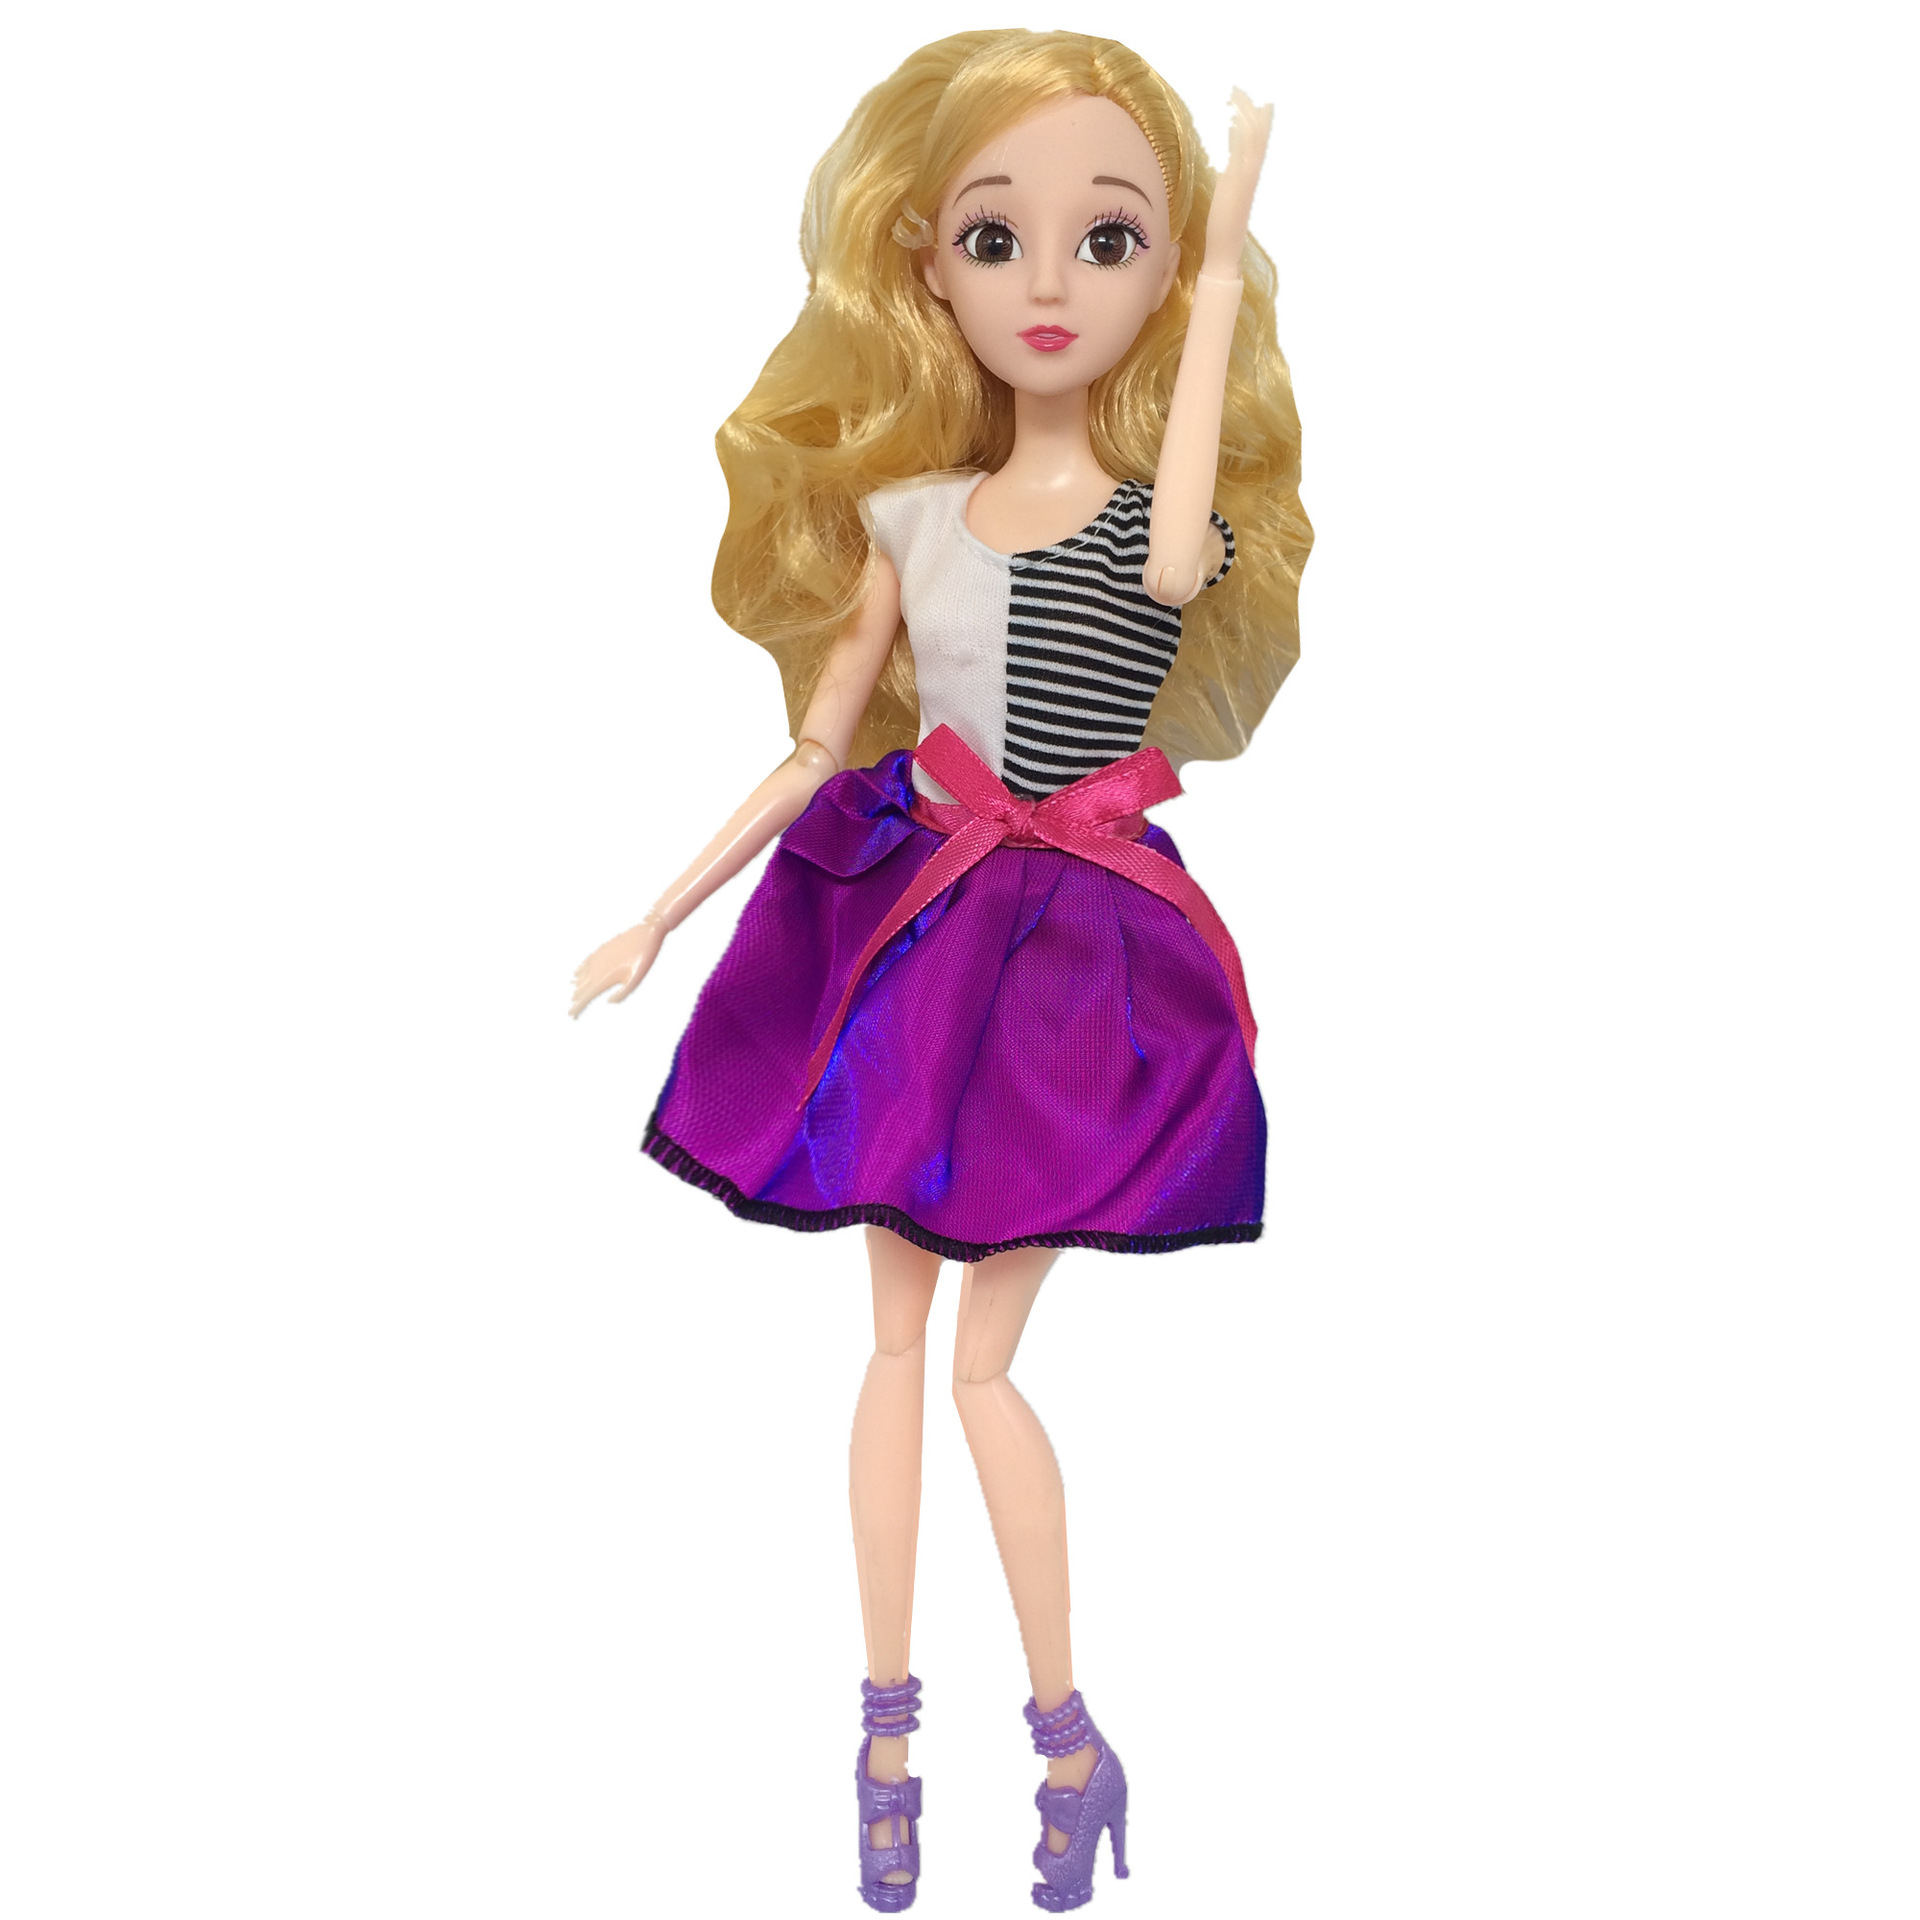 2021芭芘30巴比娃娃衣服新版时装短裙8件一包休闲礼服女孩玩具-阿里巴巴